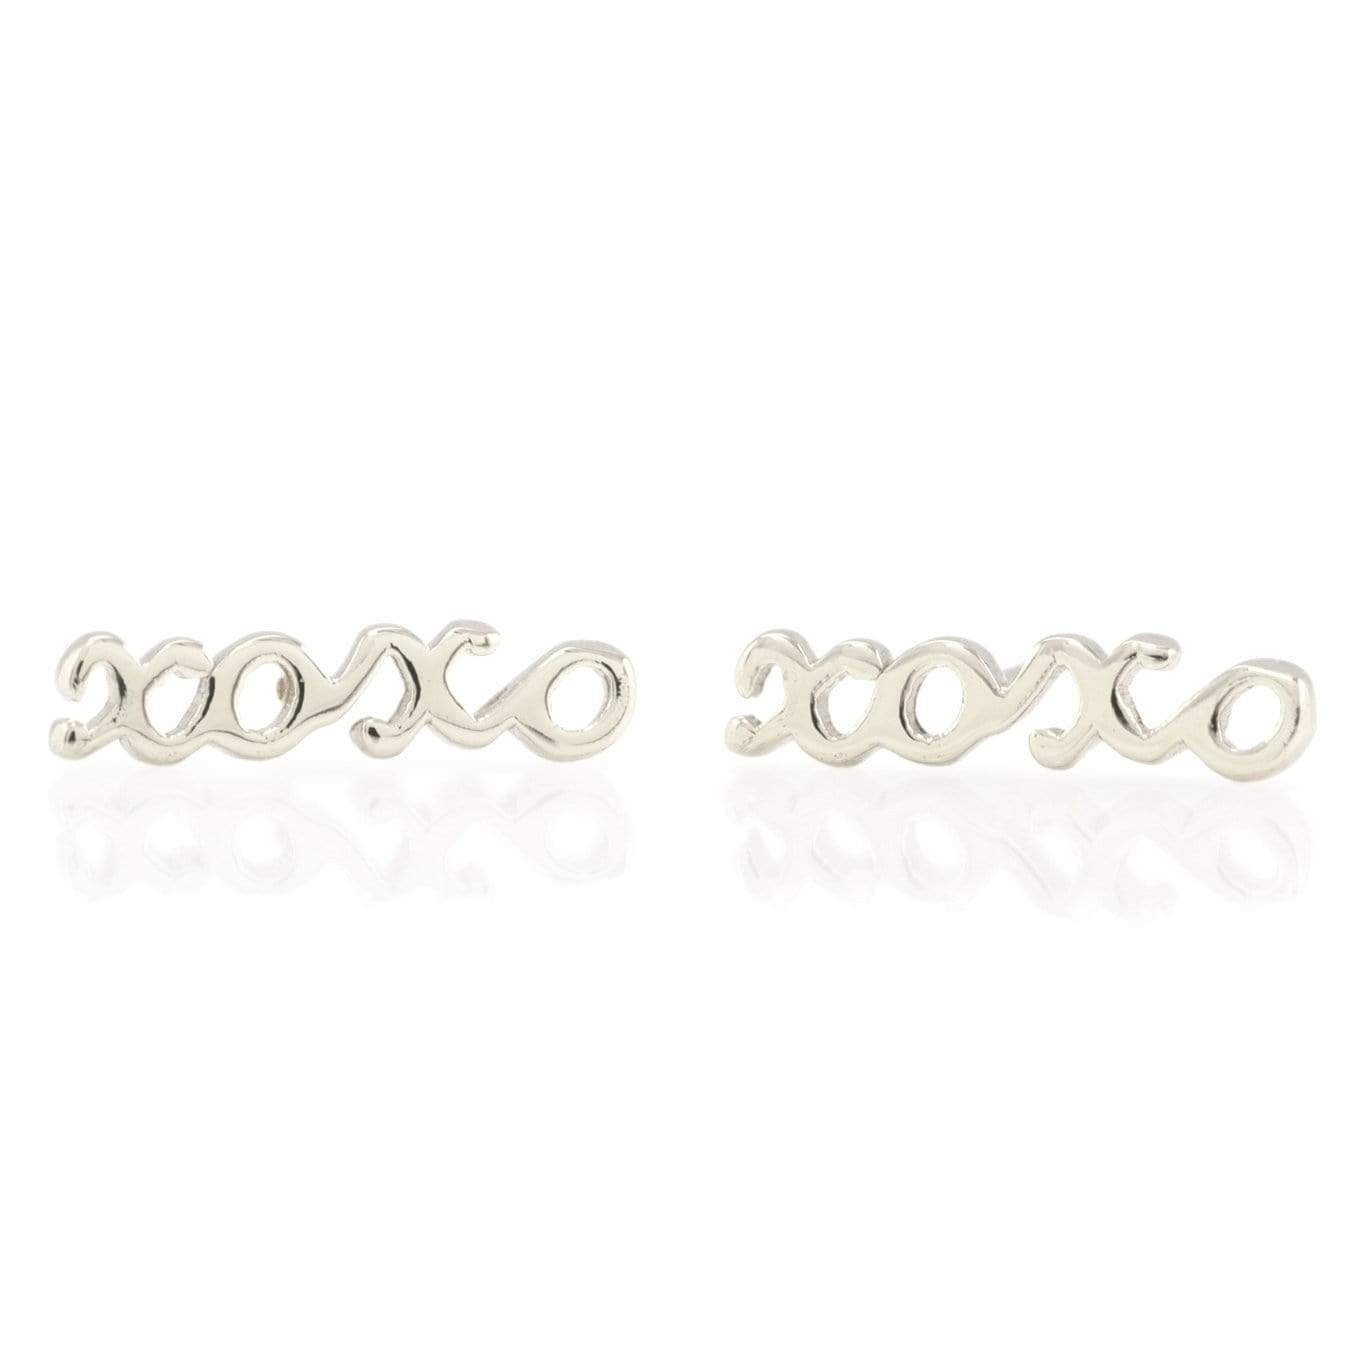 XOXO Script Stud Earrings Earrings Kris Nations Sterling Silver 